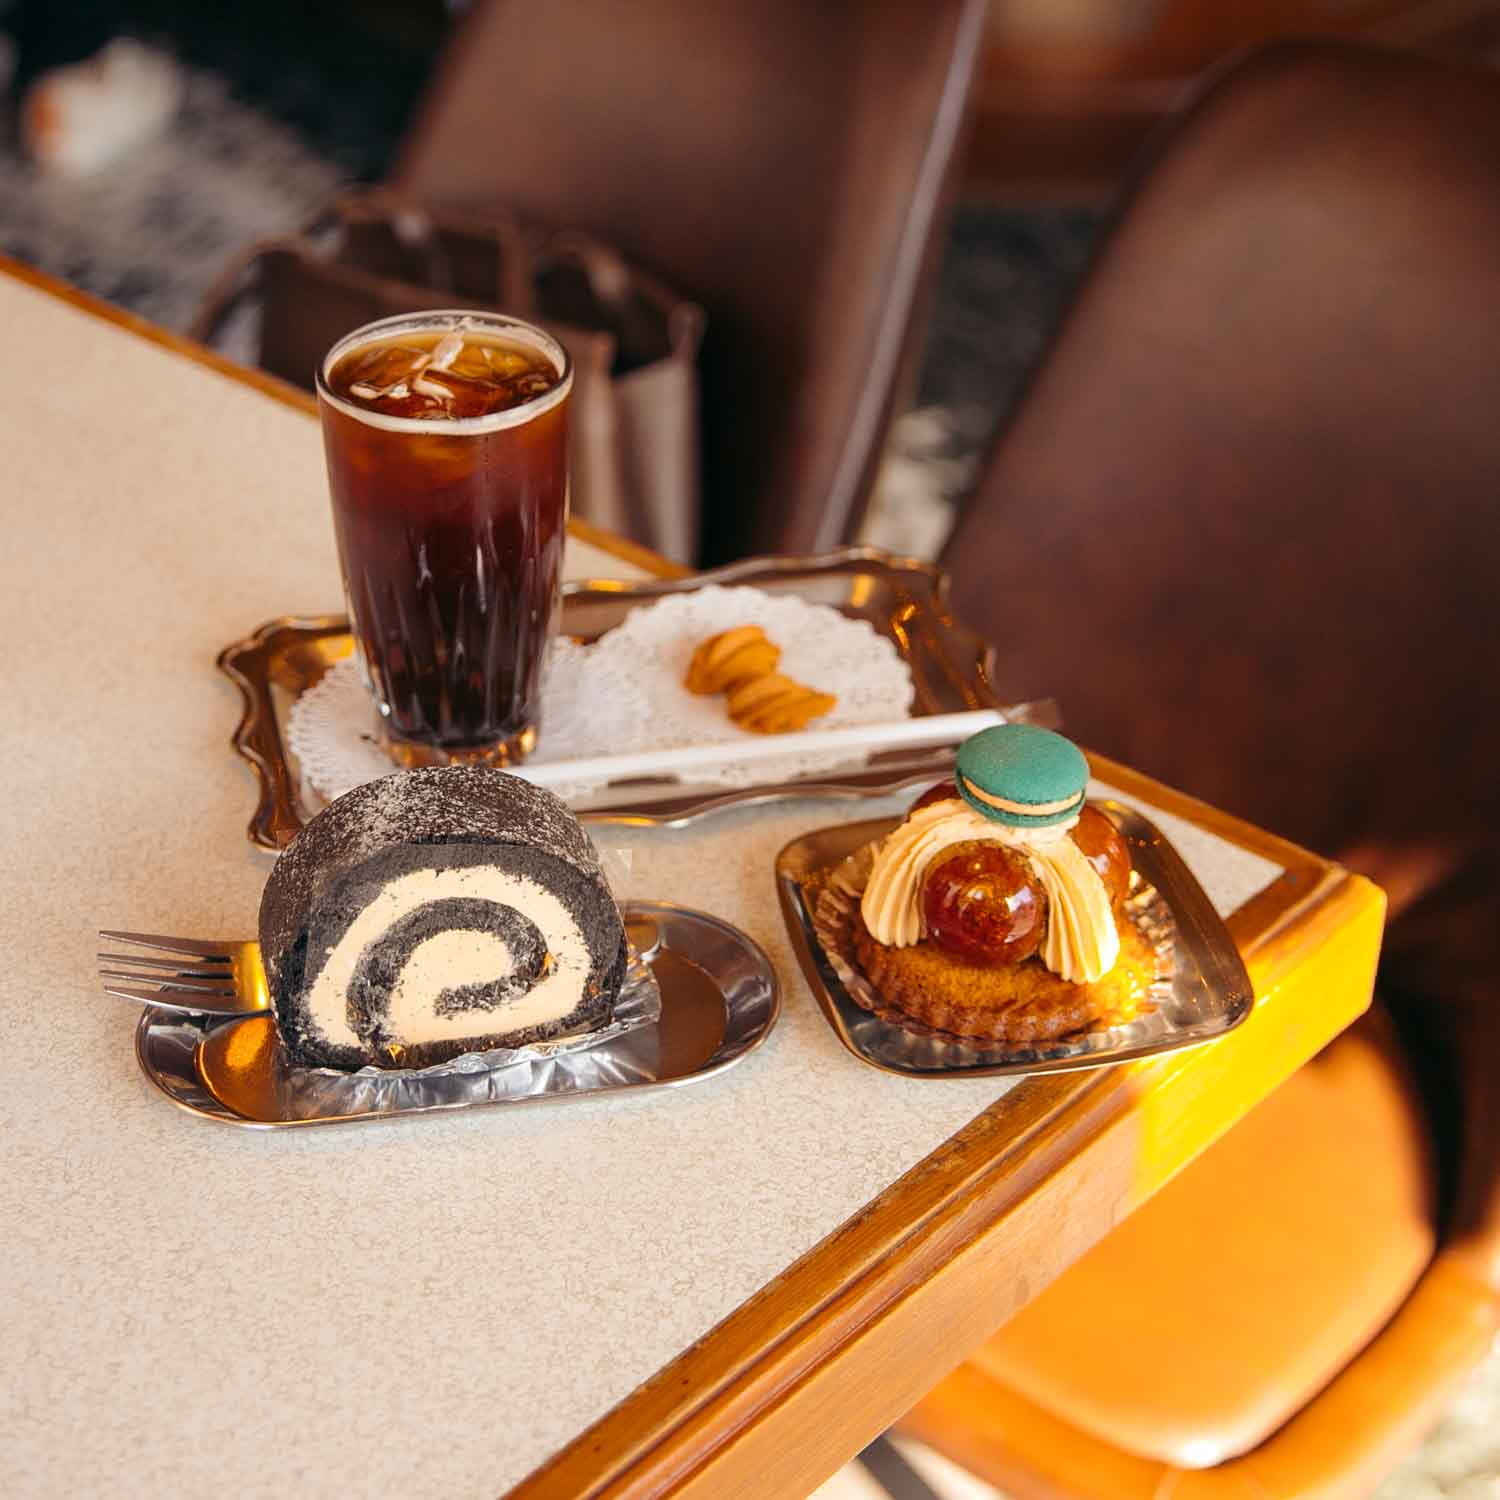 台南咖啡廳-KADOYA喫茶店 濃濃日式昭和復古風格，彷彿置身日本！IG超人氣打卡復古洋菓子專賣店。